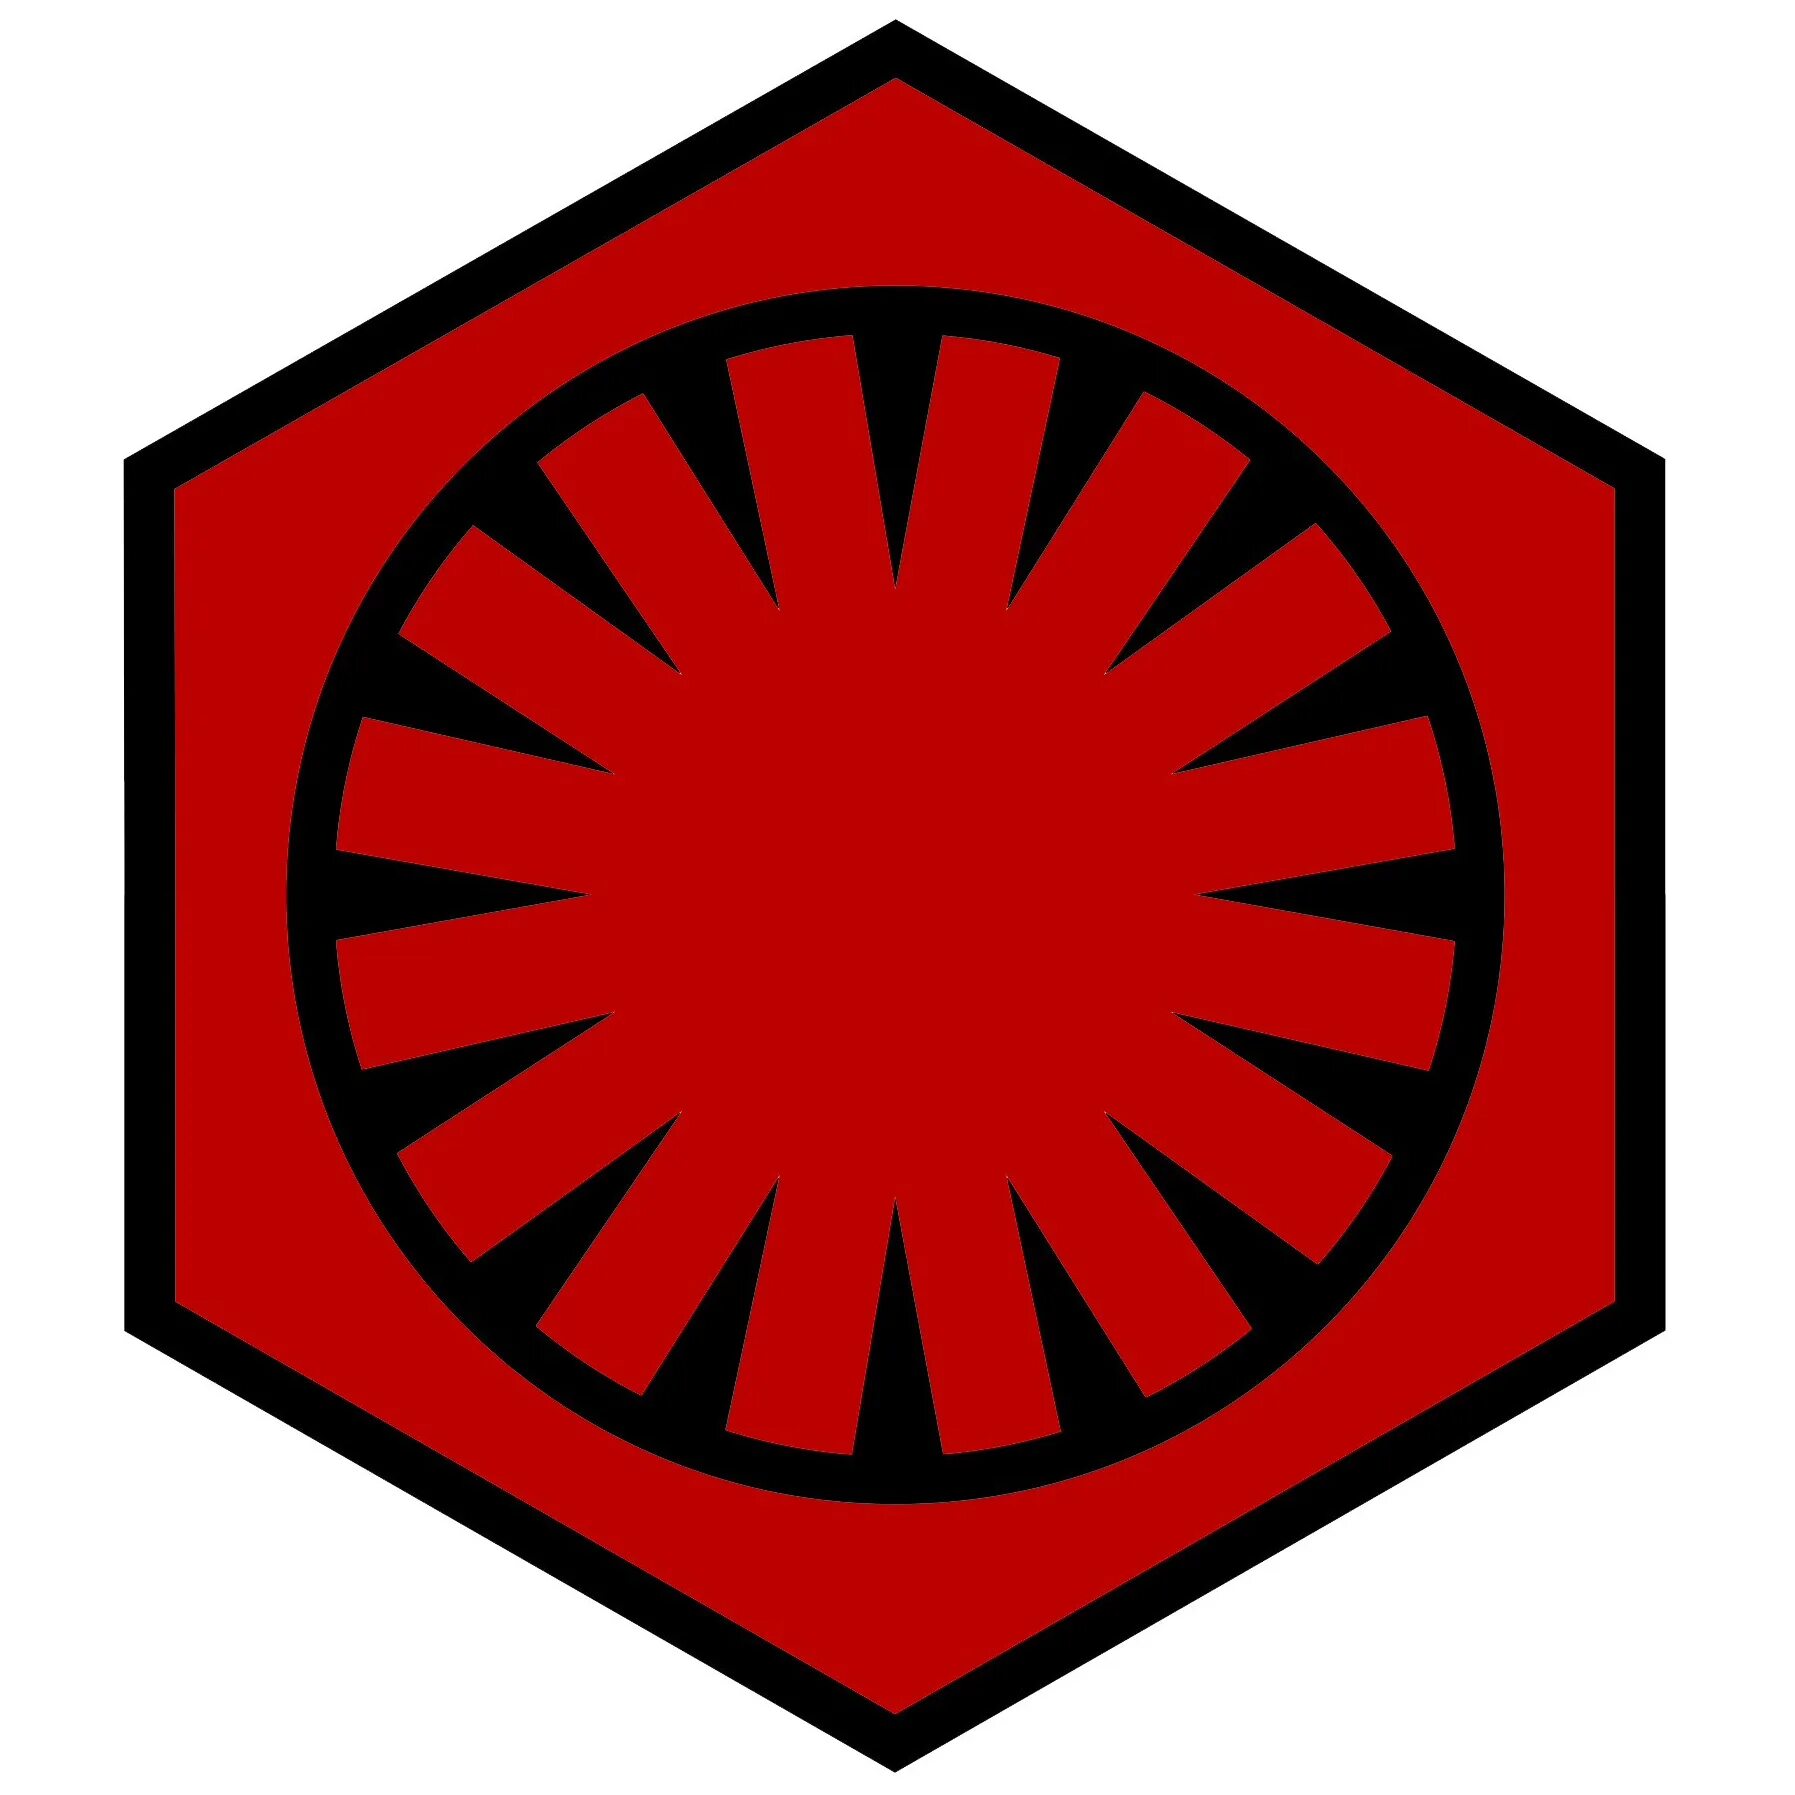 Первый ордер. Первый орден Star Wars знак. Знак первого ордена Star Wars. Первый орден и Империя. Звёздные войны первый орден символ.